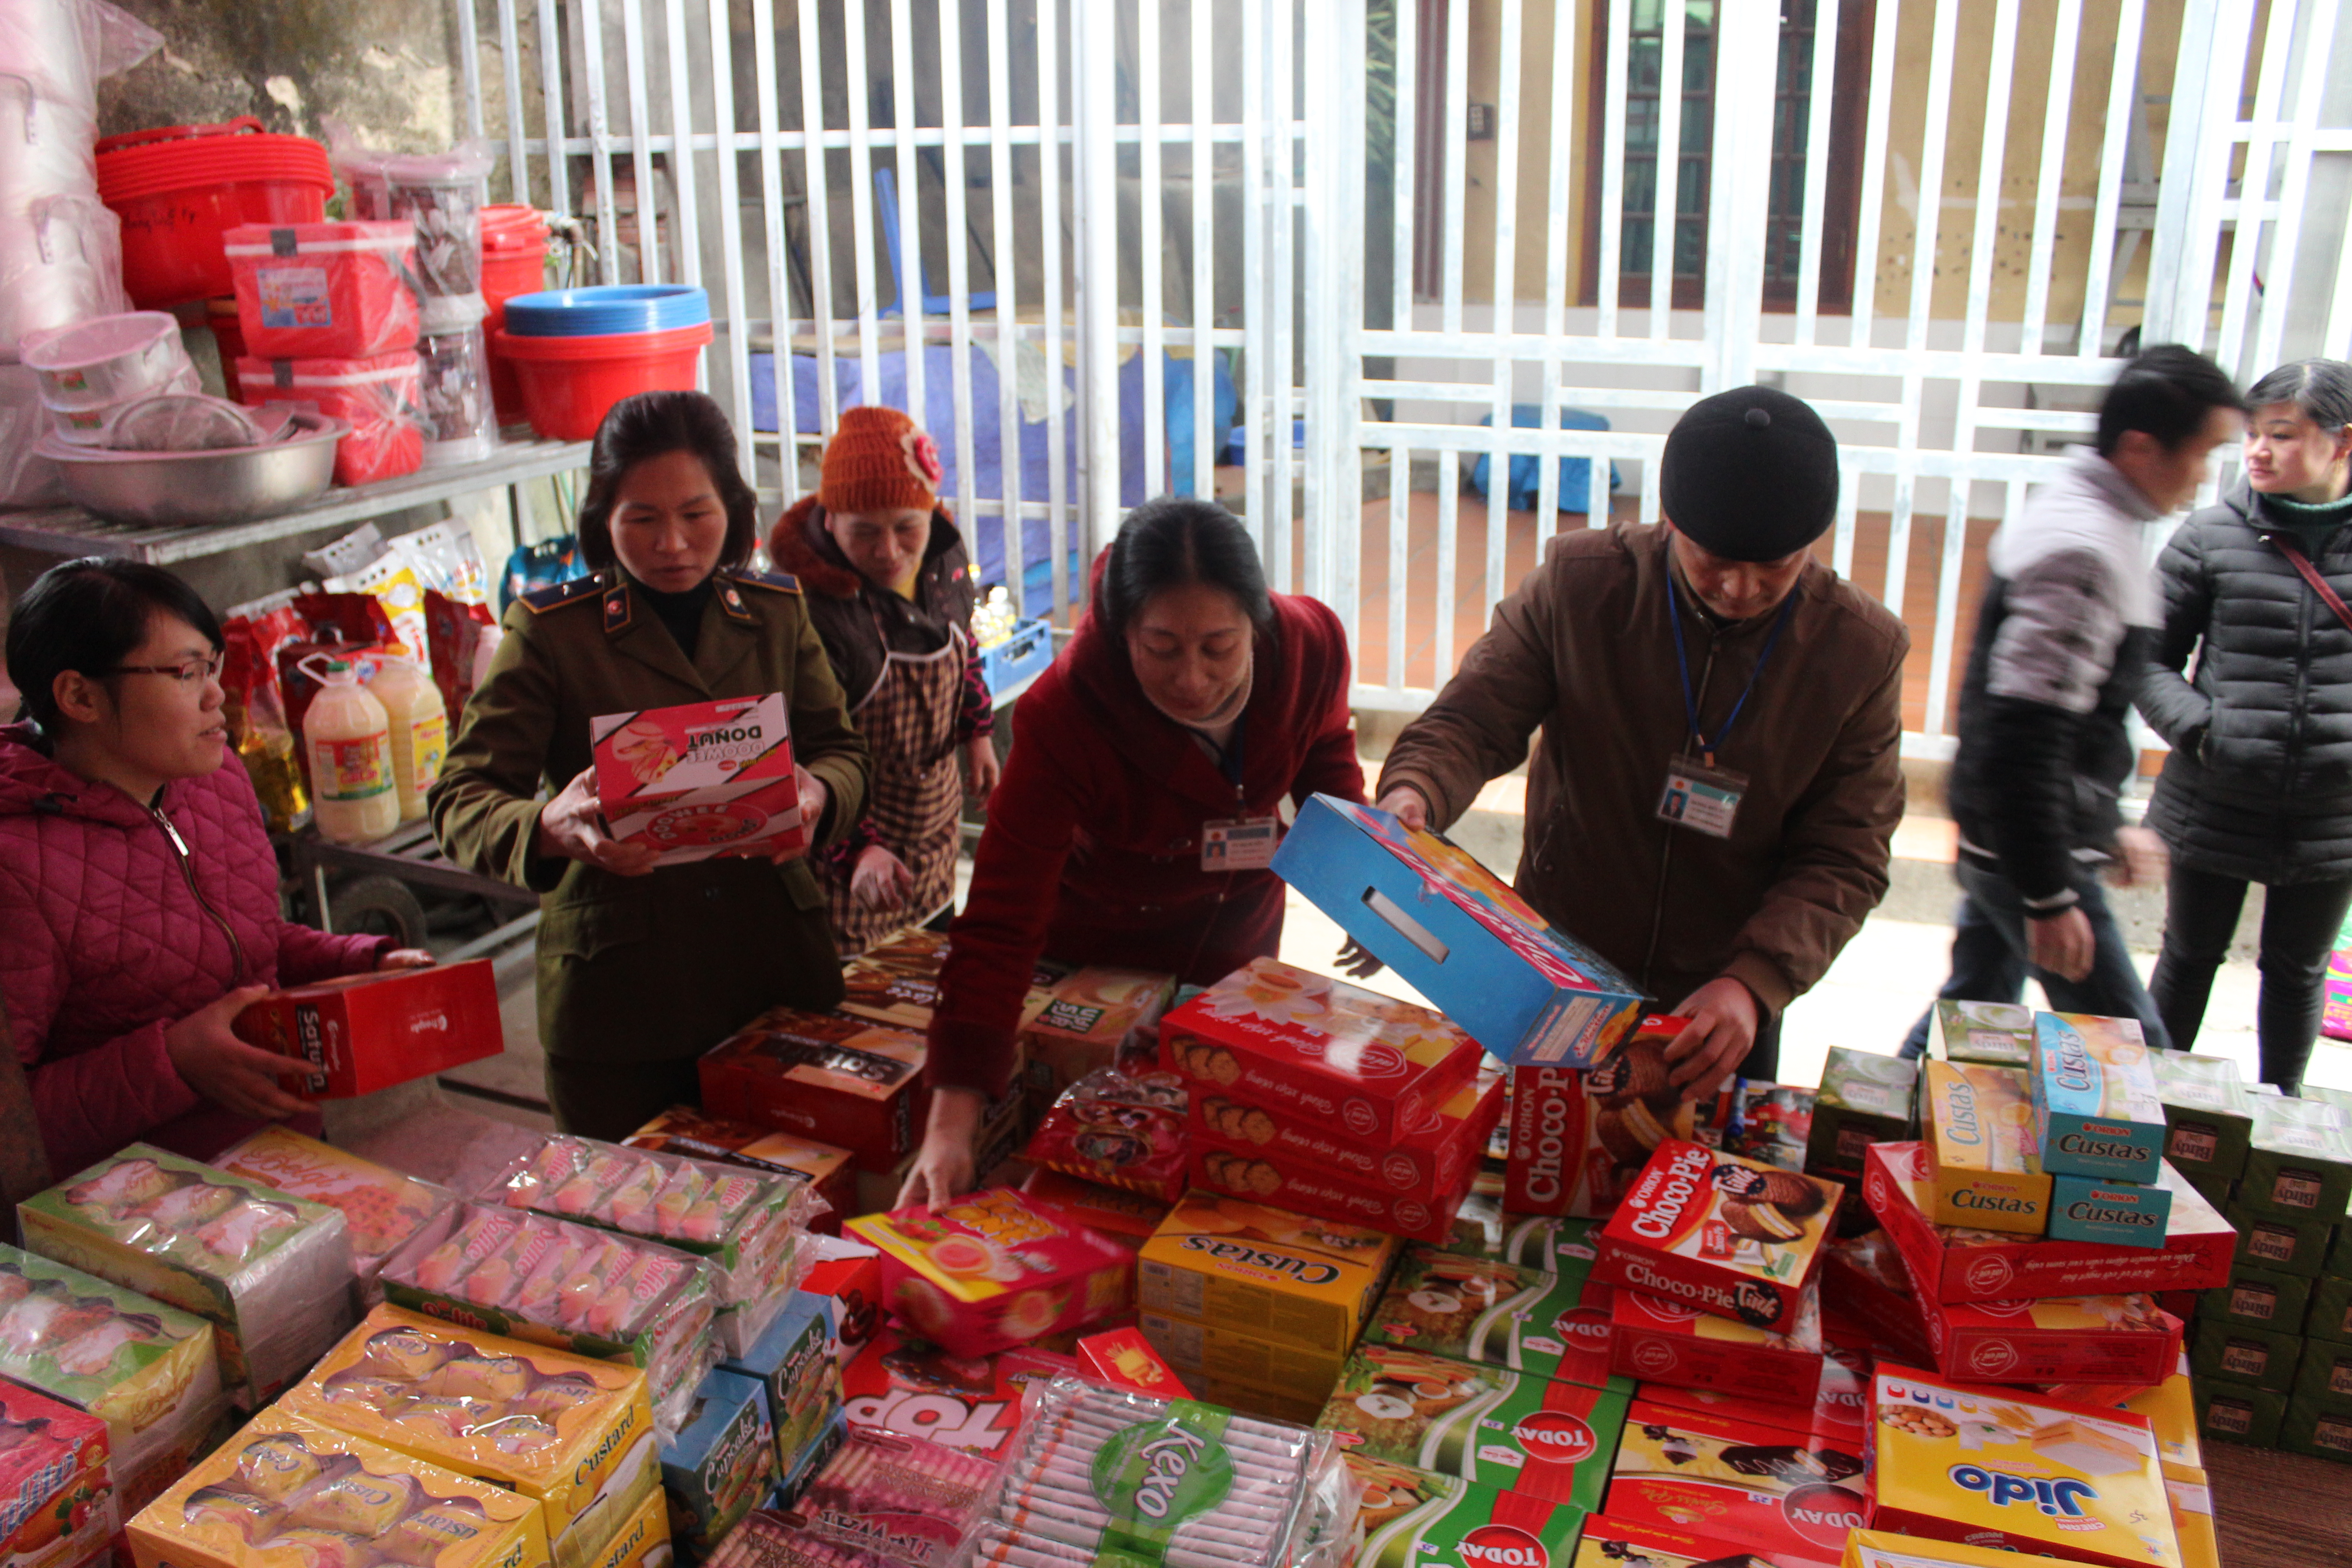 Đoàn liên ngành kiểm tra tại cơ sở kinh doanh hàng tạp hóa tại thị trấn Tam Sơn - Quản Bạ